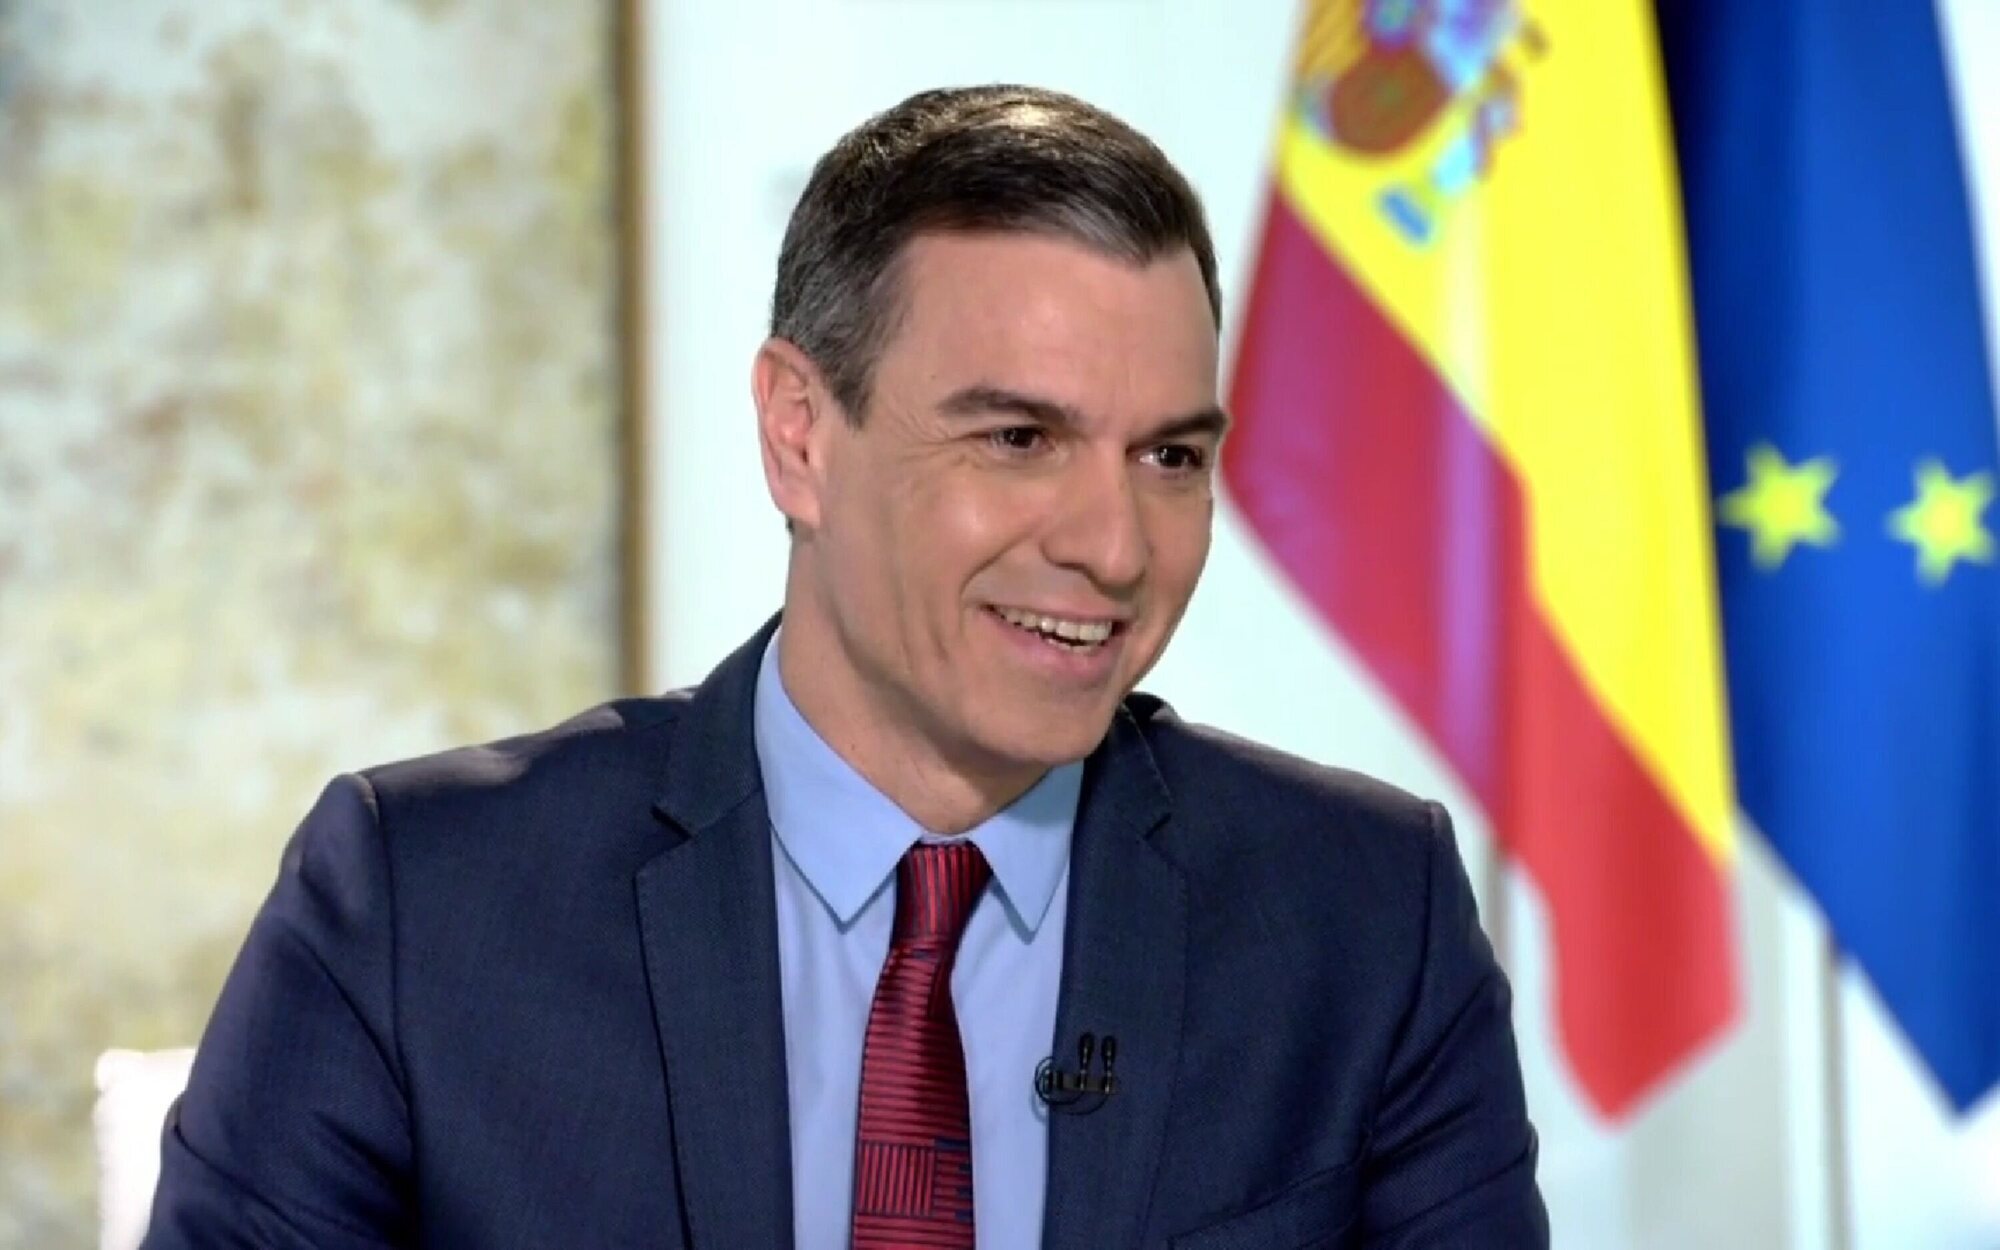 Pedro Sánchez concede una entrevista a 'El intermedio' y no cierra la puerta a 'El hormiguero'